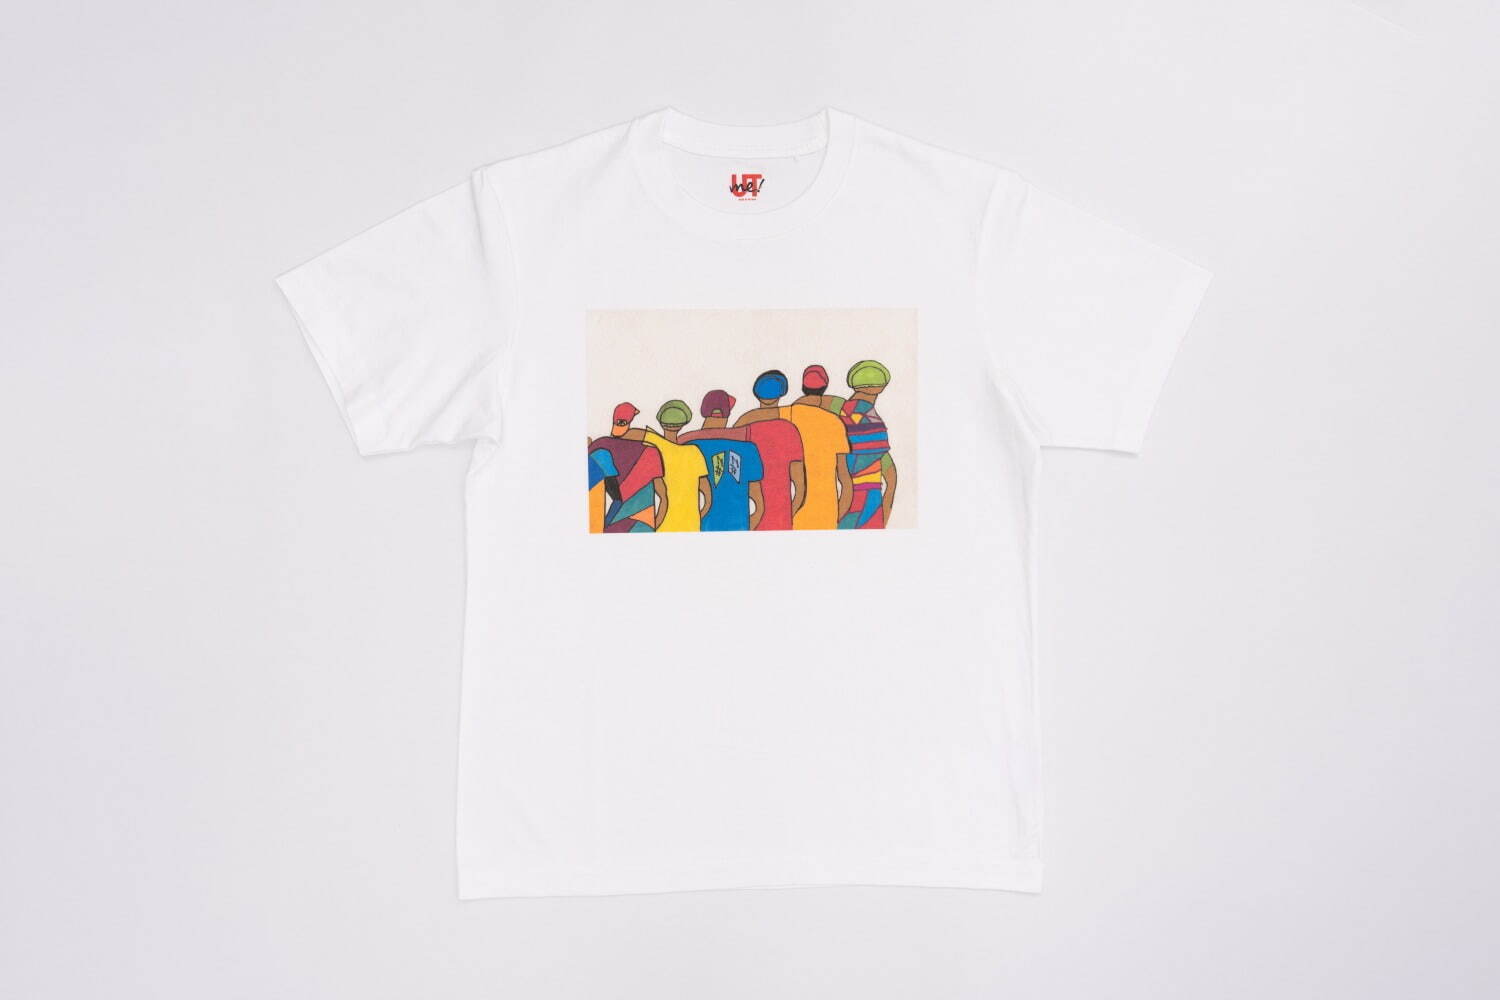 Tシャツ「友情のおきて」1,990円
受賞者：アシフィウィ